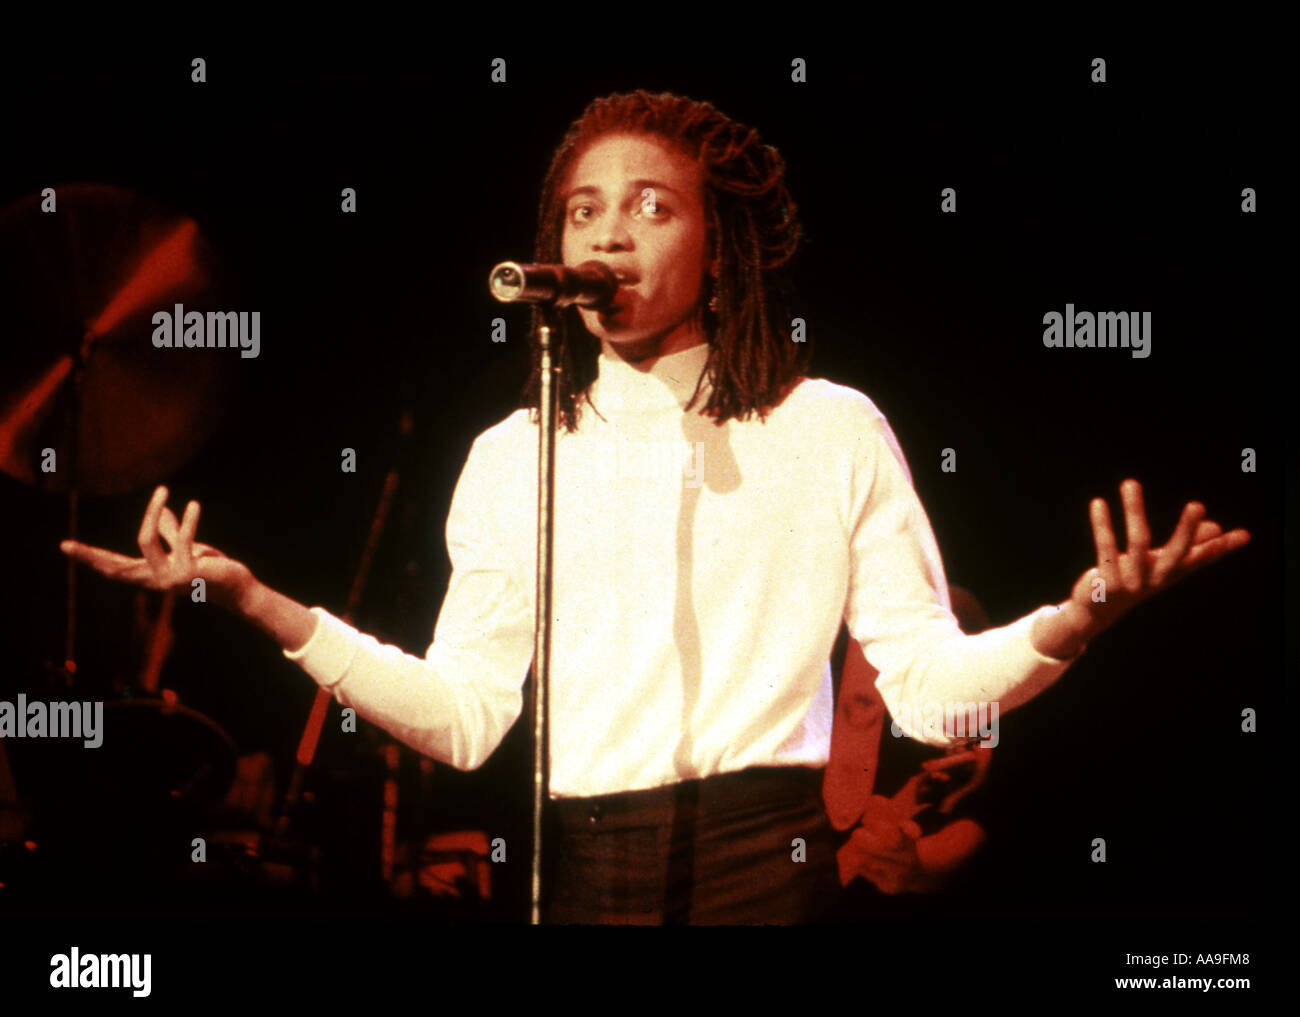 TERENCE TRENT D'ARBY cantante estadounidense alrededor de 1988 Foto de stock